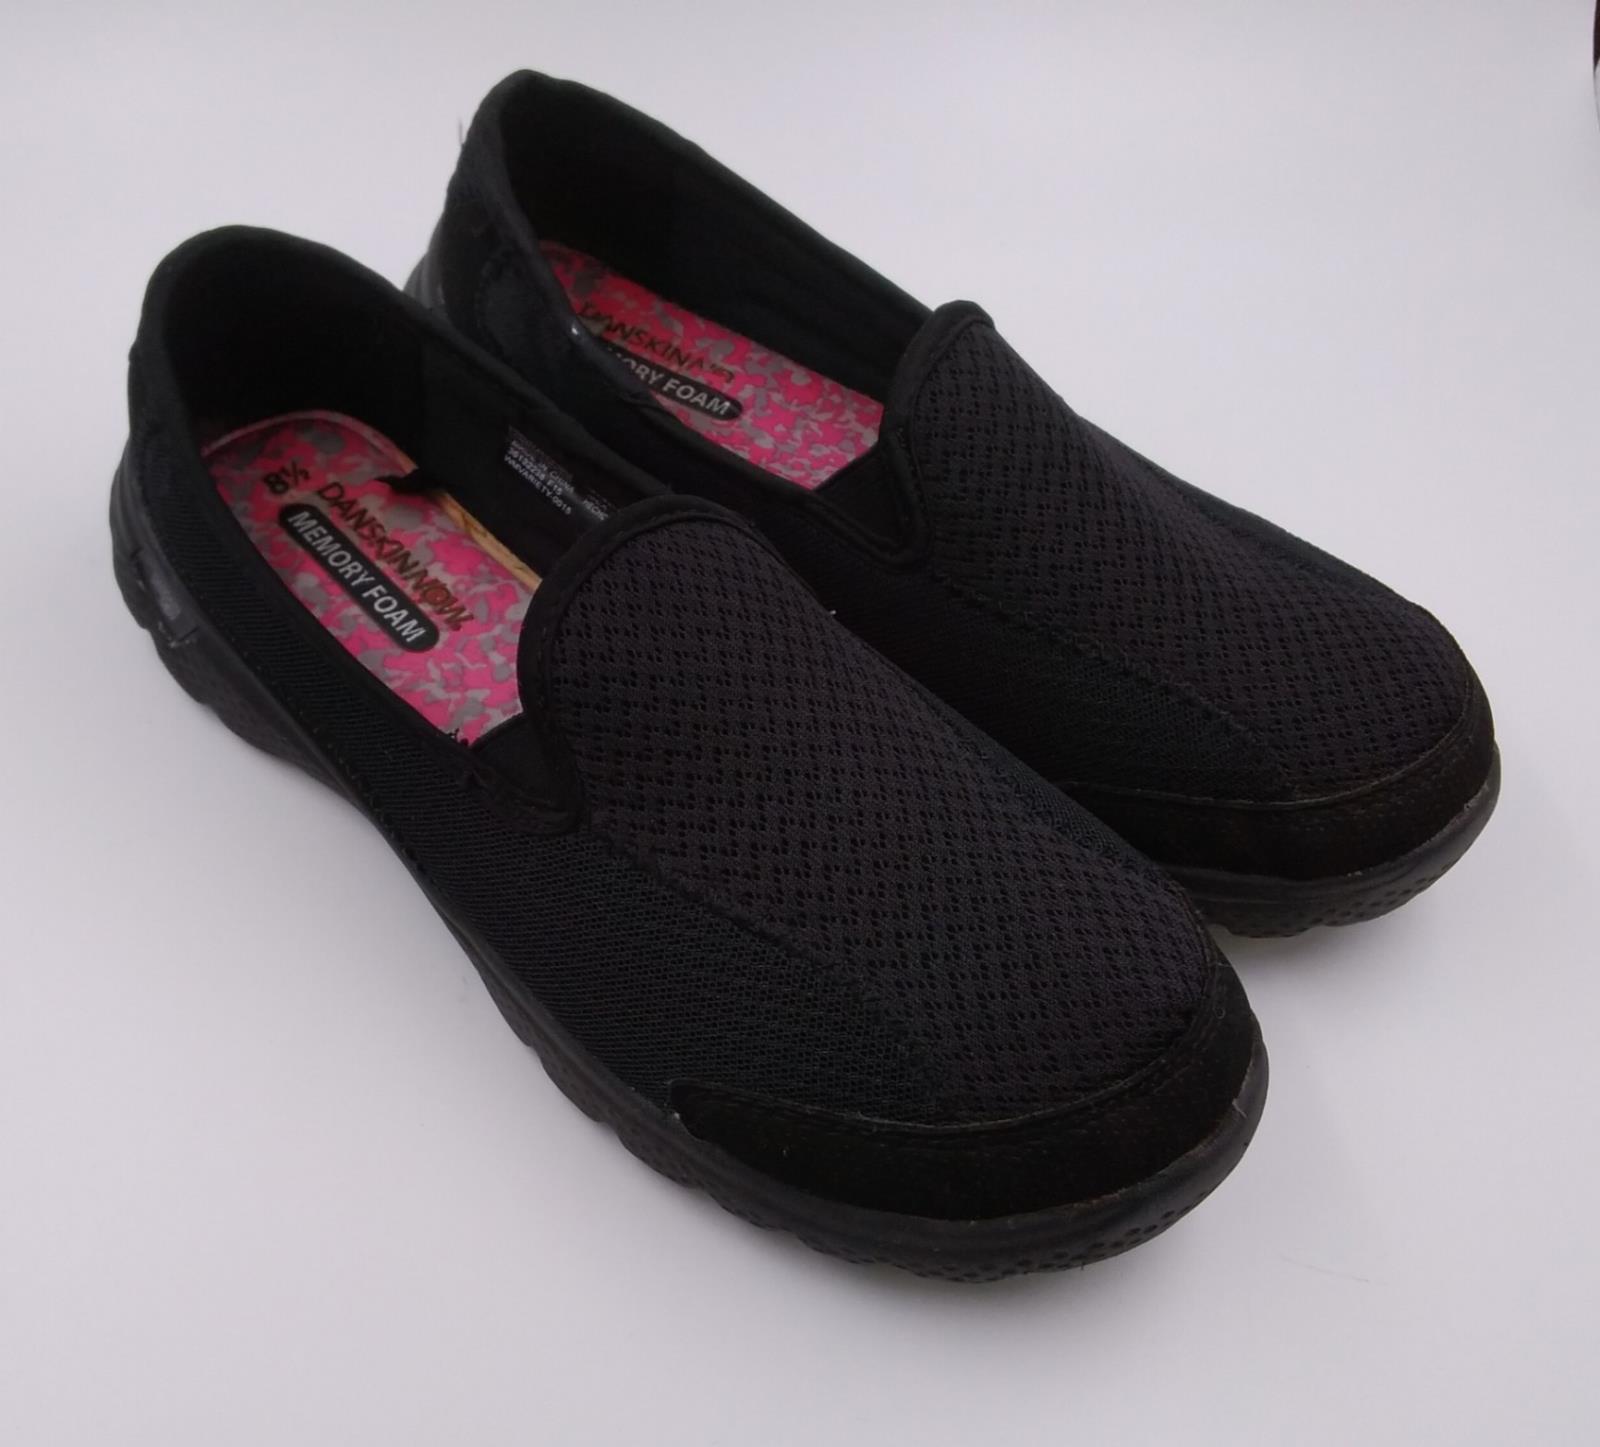 Danskin Now Womens Black Slip On Memory Foam Athletic Shoes Size 8.5 | eBay